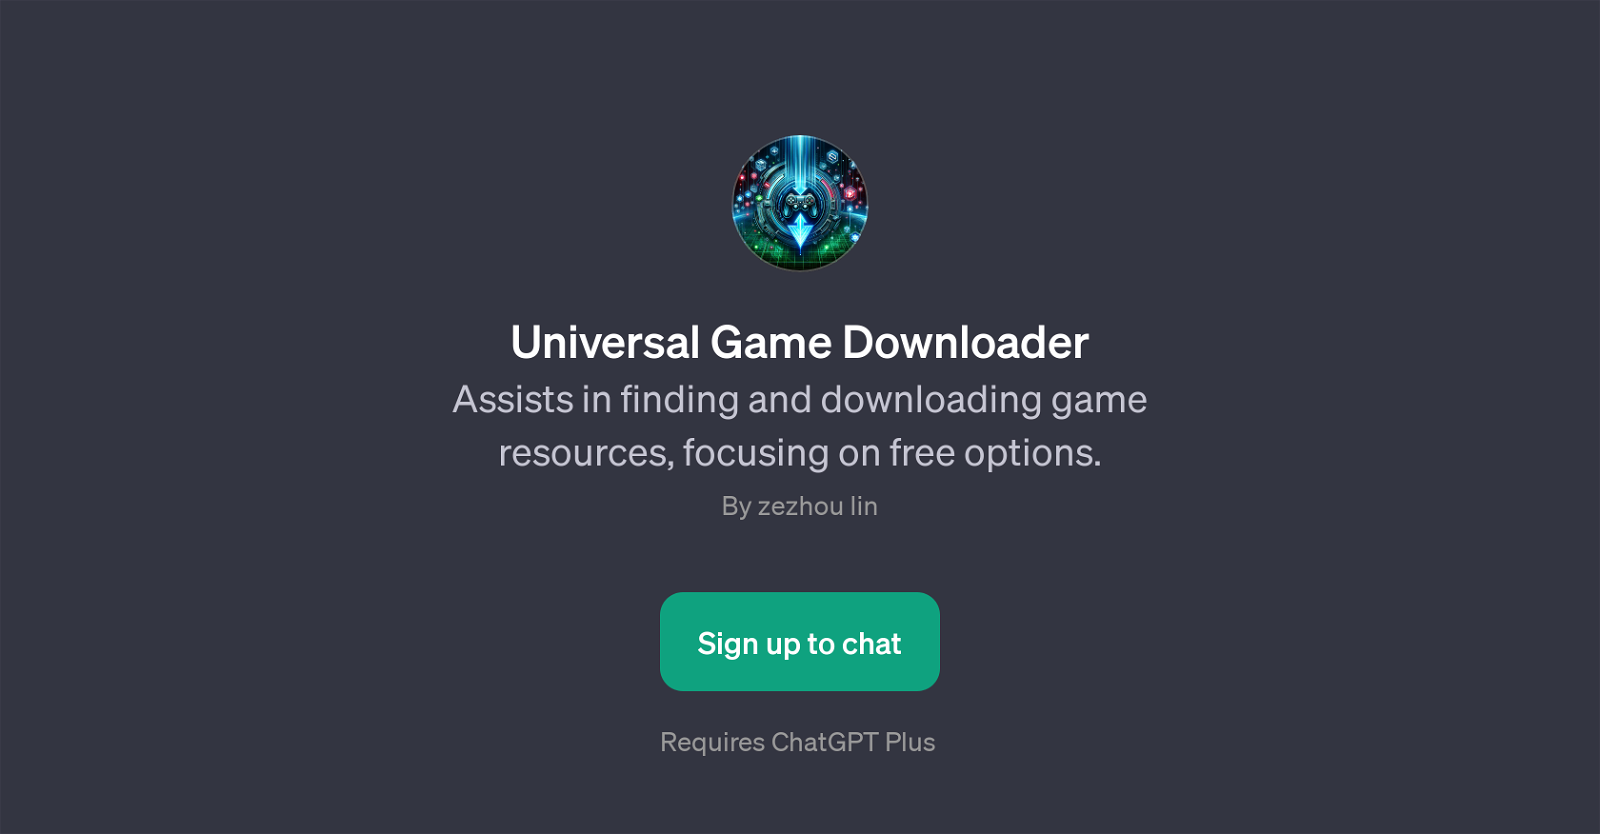 Universal Game Downloader website